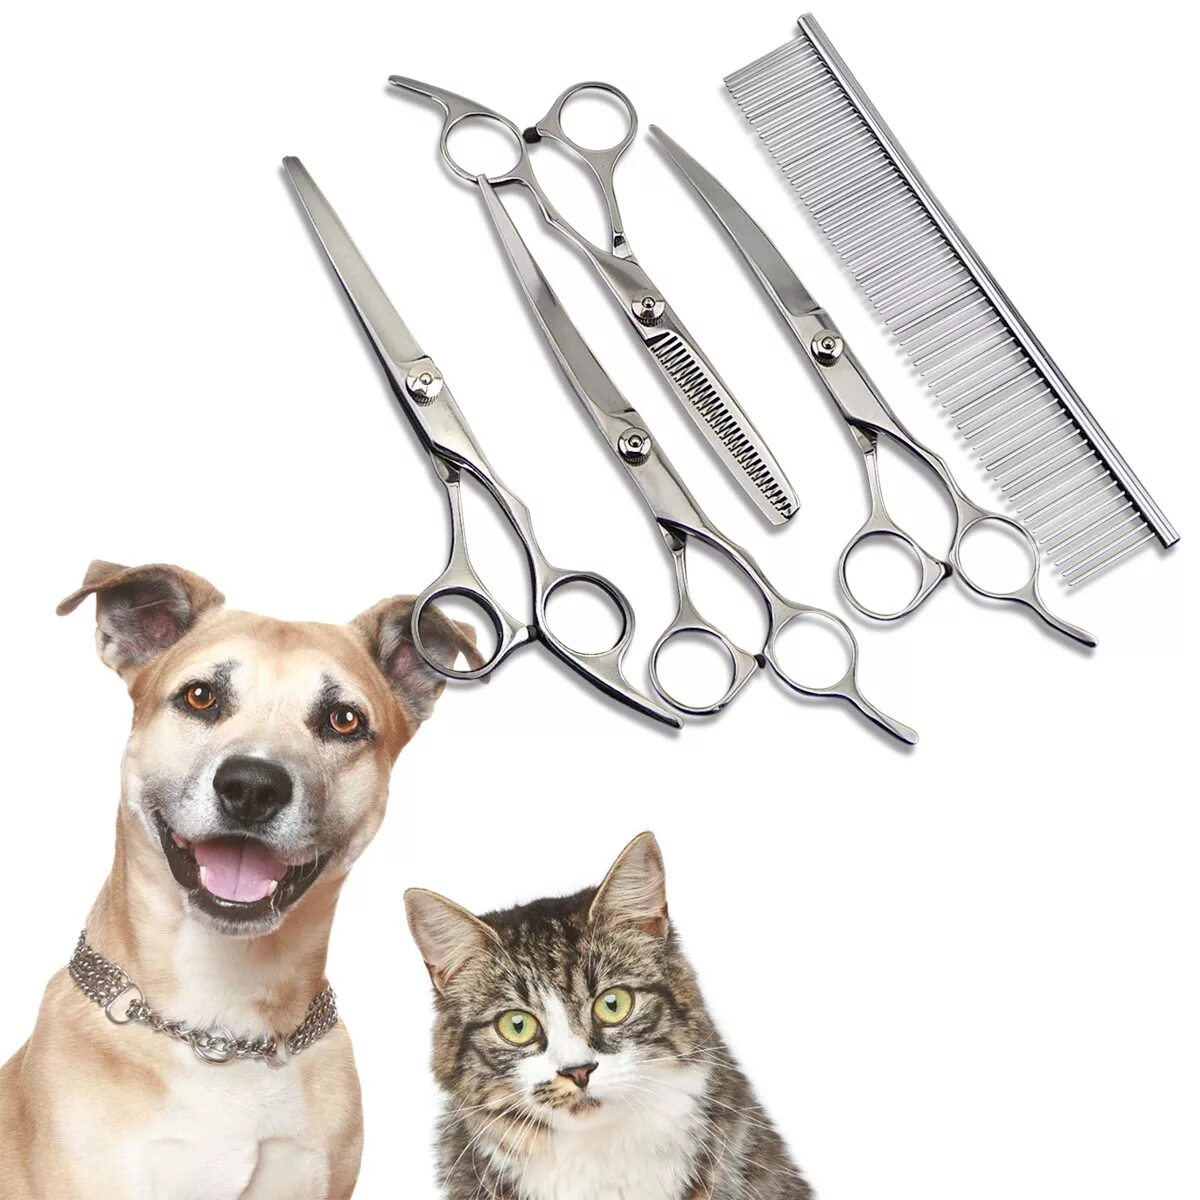 Pet setting. Инструменты для стрижки собак. Инструменты грумера. Груминг собаки инструменты. Инструменты для груминга кошек.